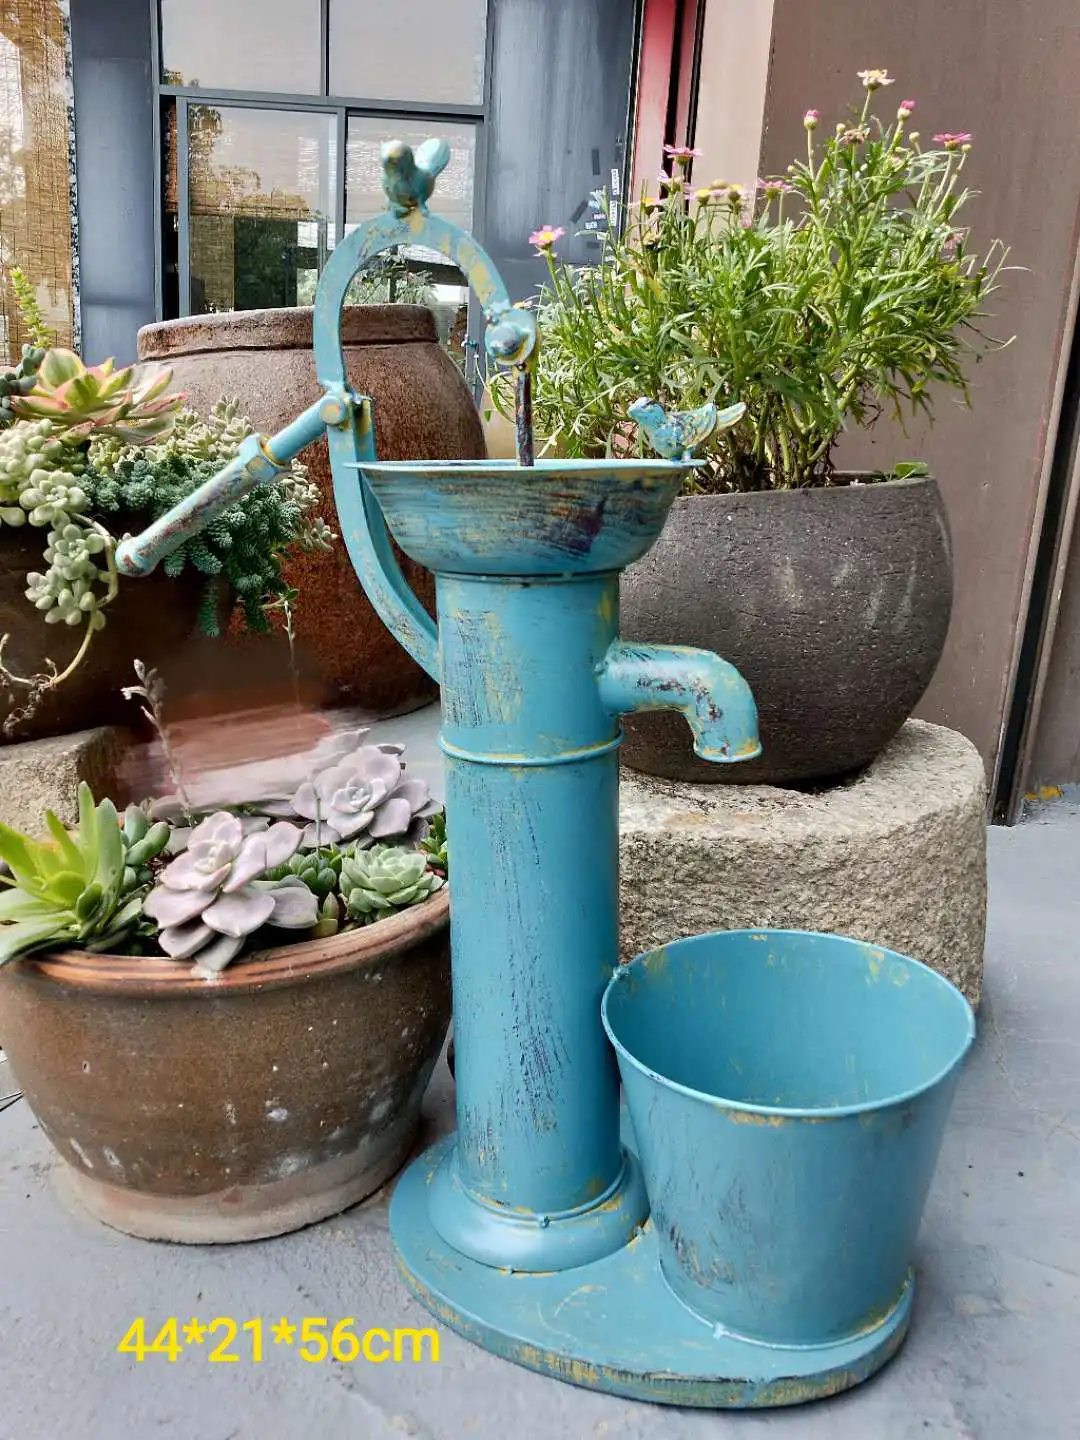 Antique Blue Water Hand Pump Flower Pot Metal Barrel Planter Bird Feeder Bath Faucet Roof Garden Balcony Courtyard Decoration